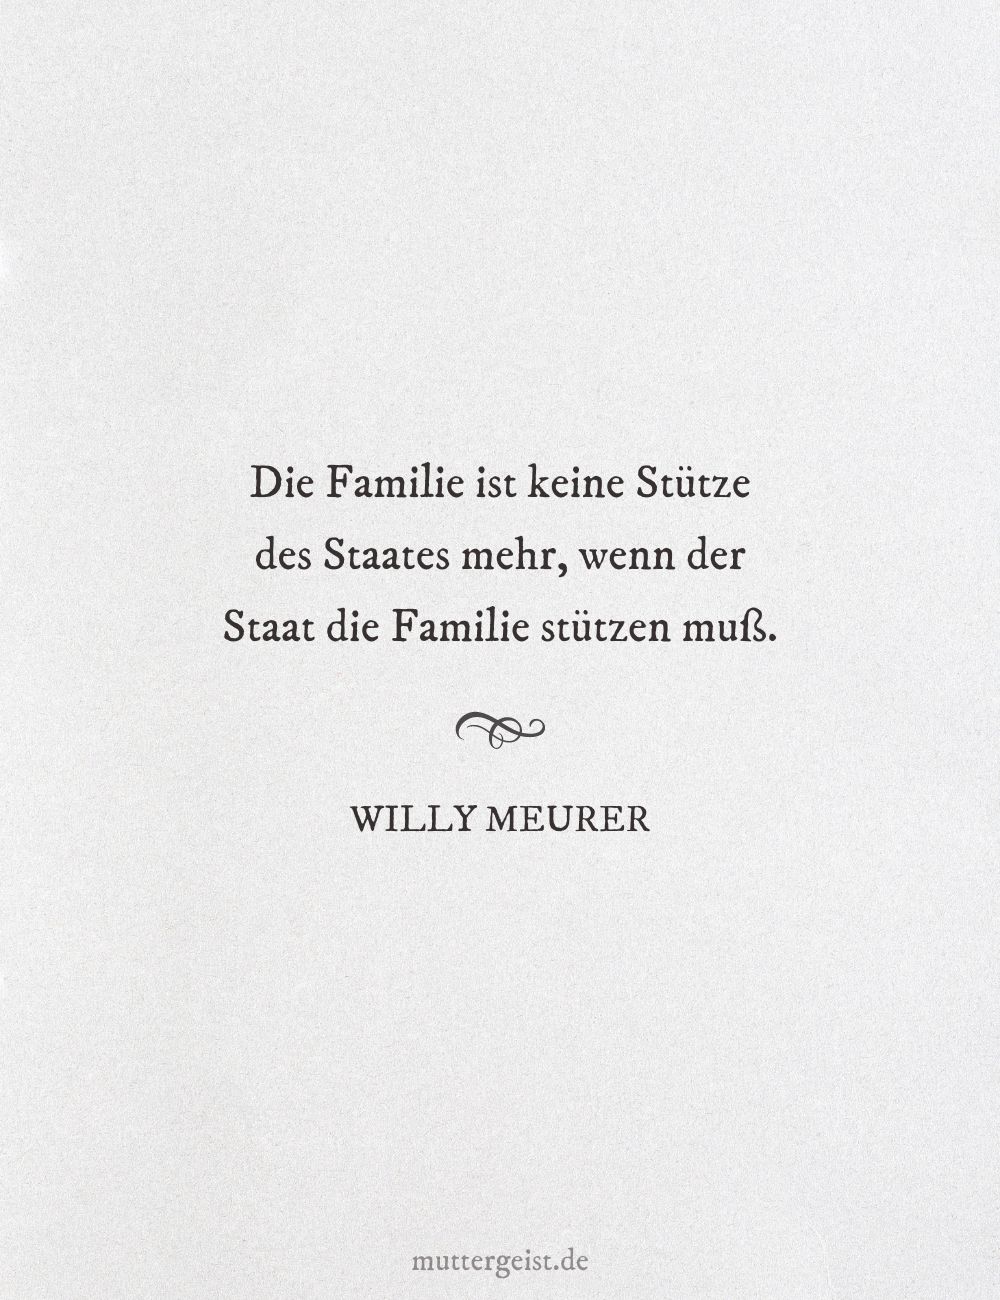 Willy Meurers Worte über die Institution der Familie